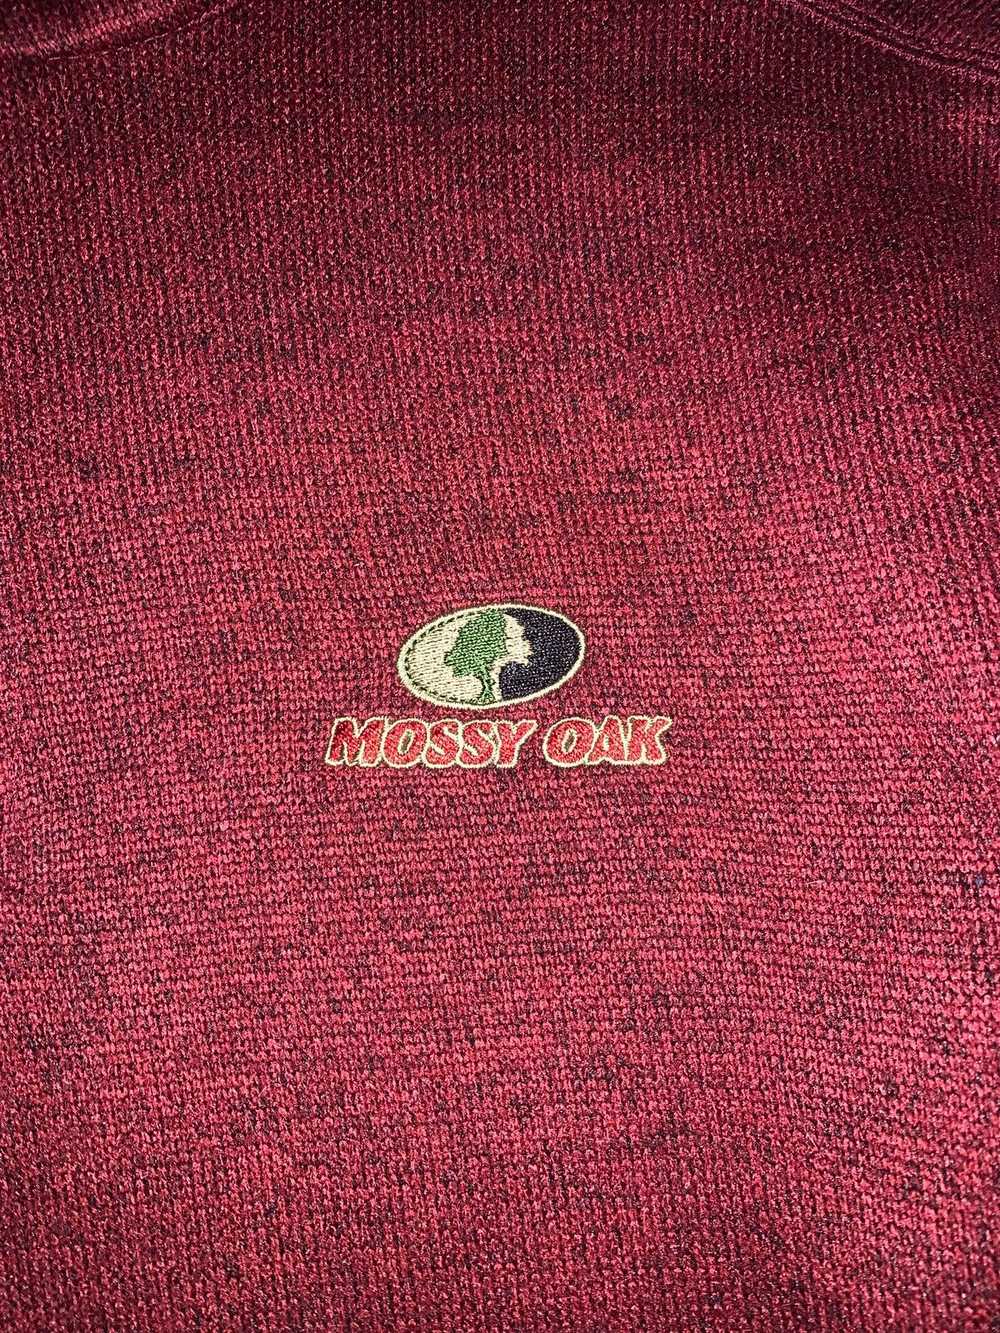 Mossy Oaks × Vintage Mossy Oak Sweater - image 5